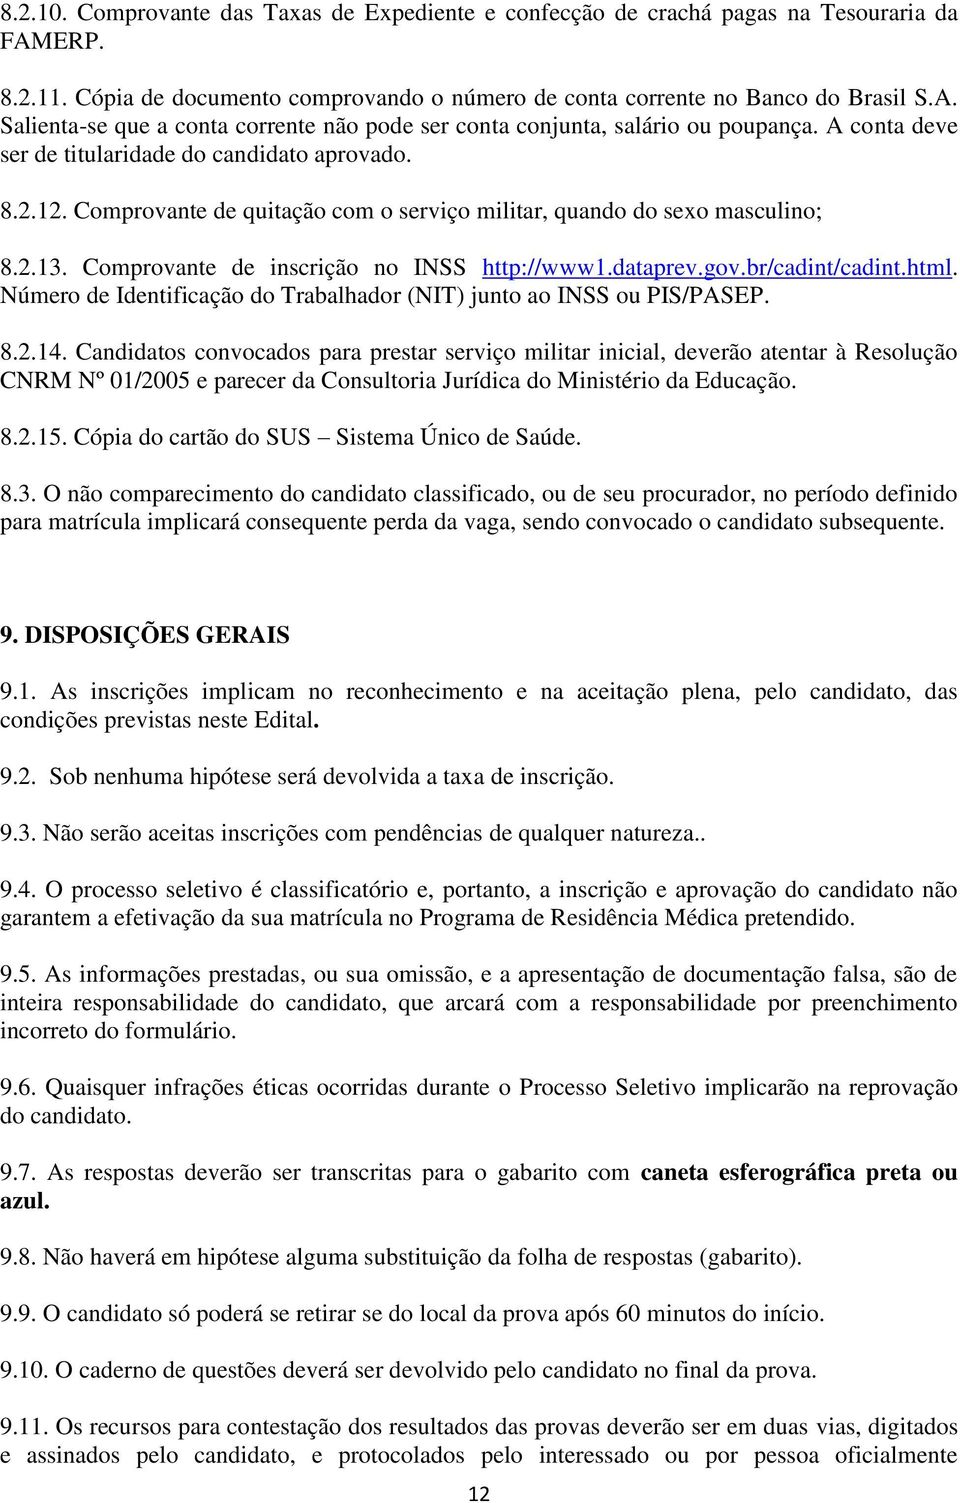 gov.br/cadint/cadint.html. Número de Identificação do Trabalhador (NIT) junto ao INSS ou PIS/PASEP. 8.2.14.